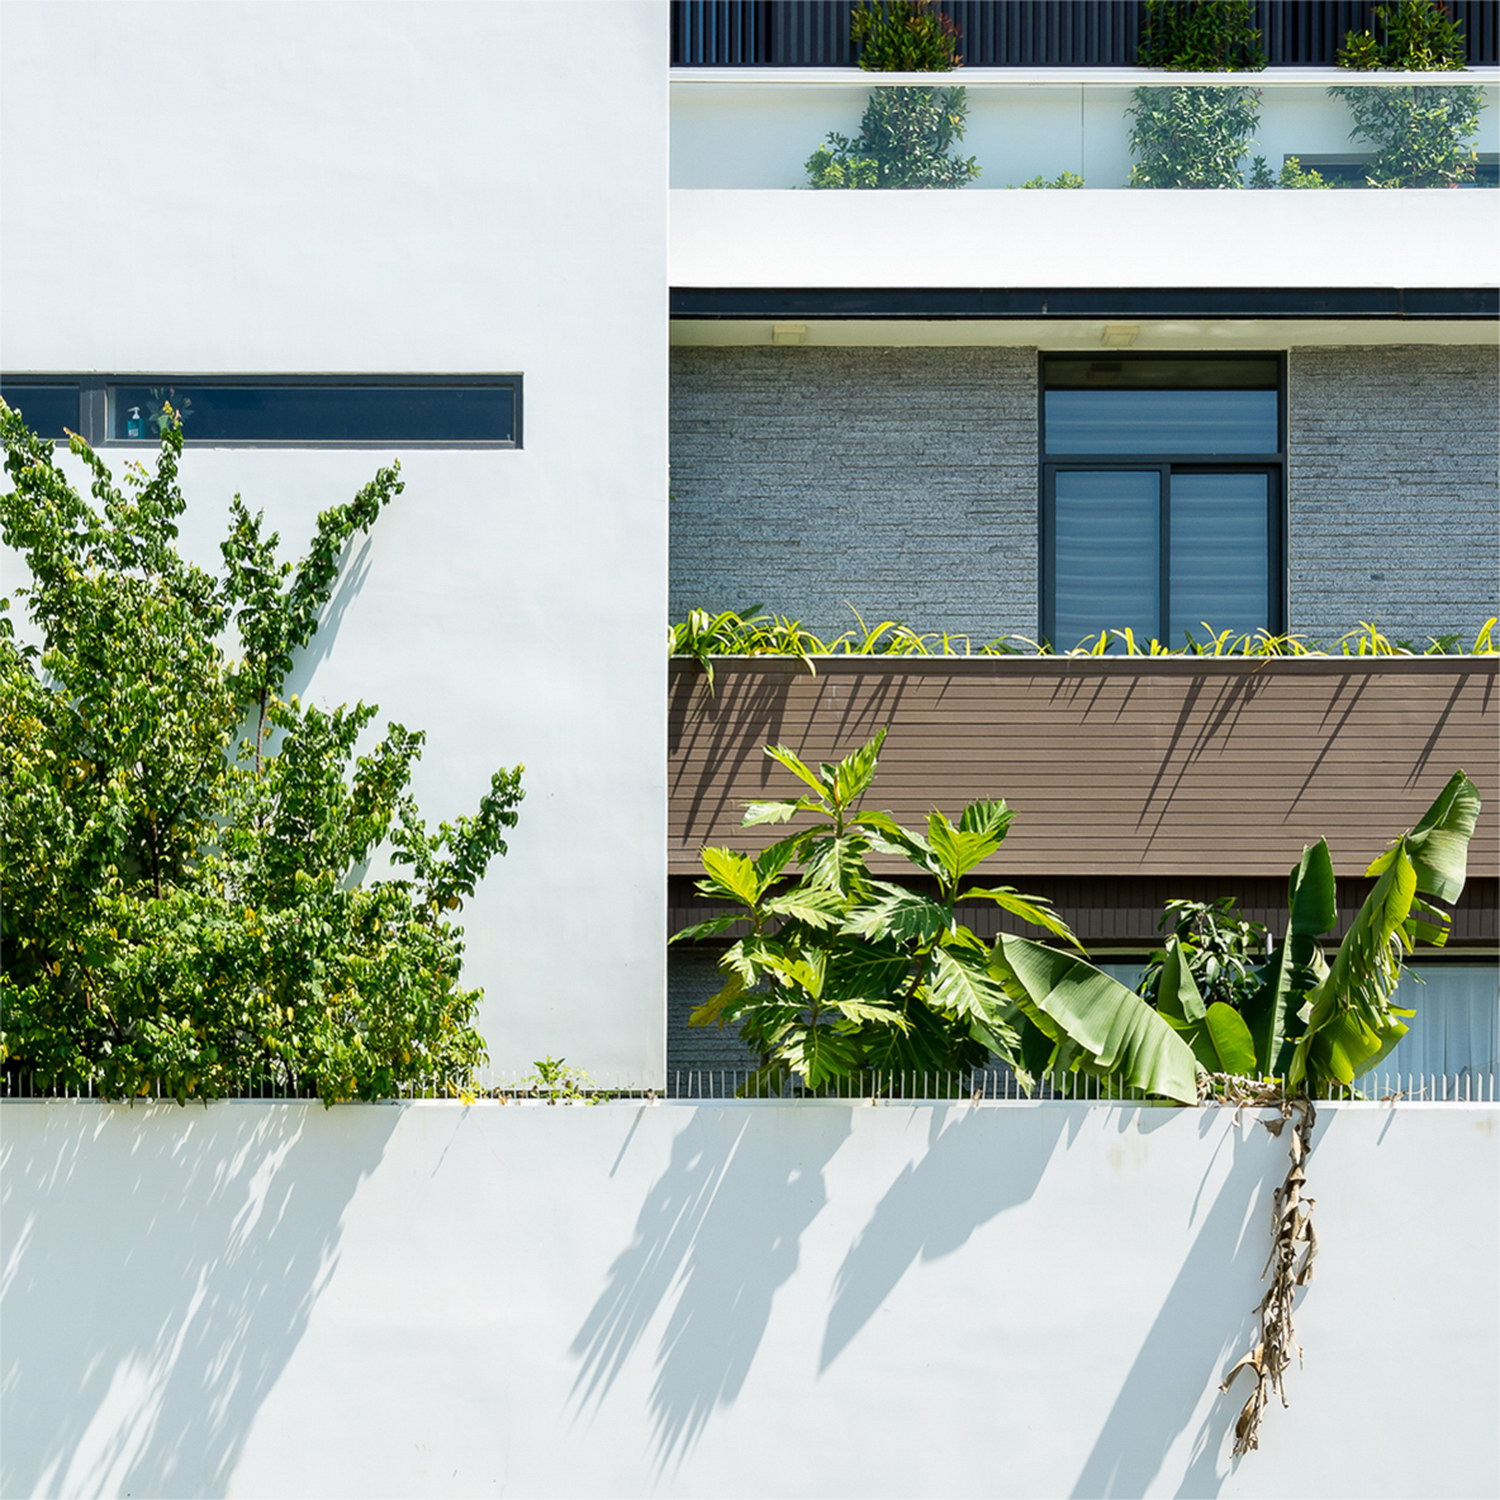 1b - Biệt thự phố kiến trúc hiện đại với không gian mở với nhiều cây xanh tại Nha Trang